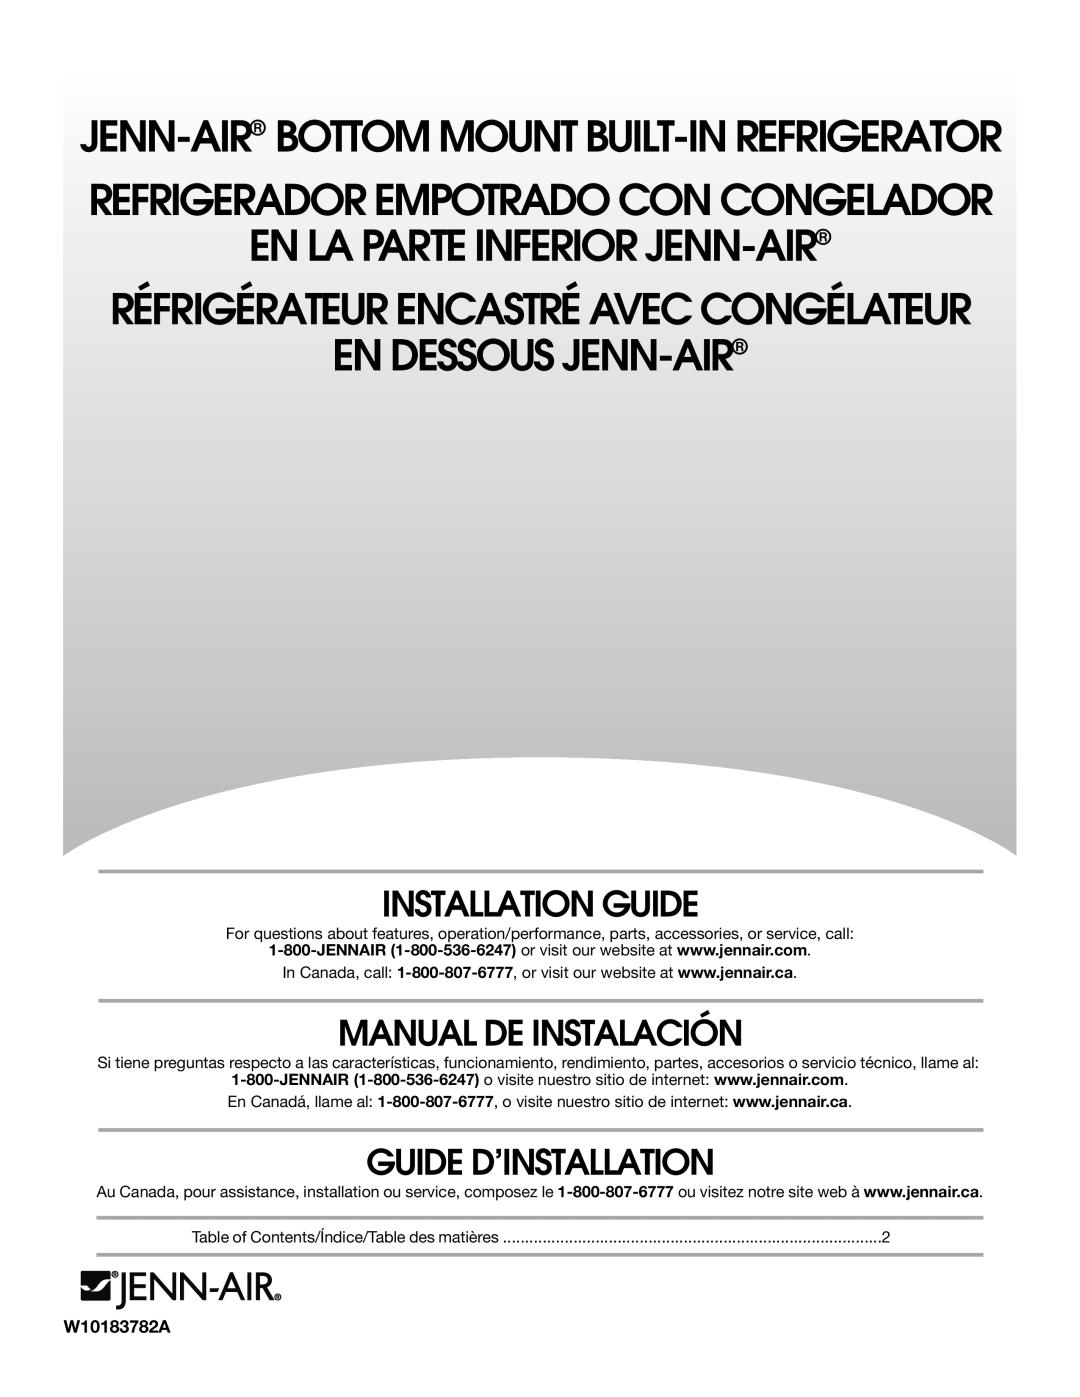 Jenn-Air W10183782A manual Installation Guide, Manual De Instalación, Guide D’Installation, En La Parte Inferior Jenn-Air 